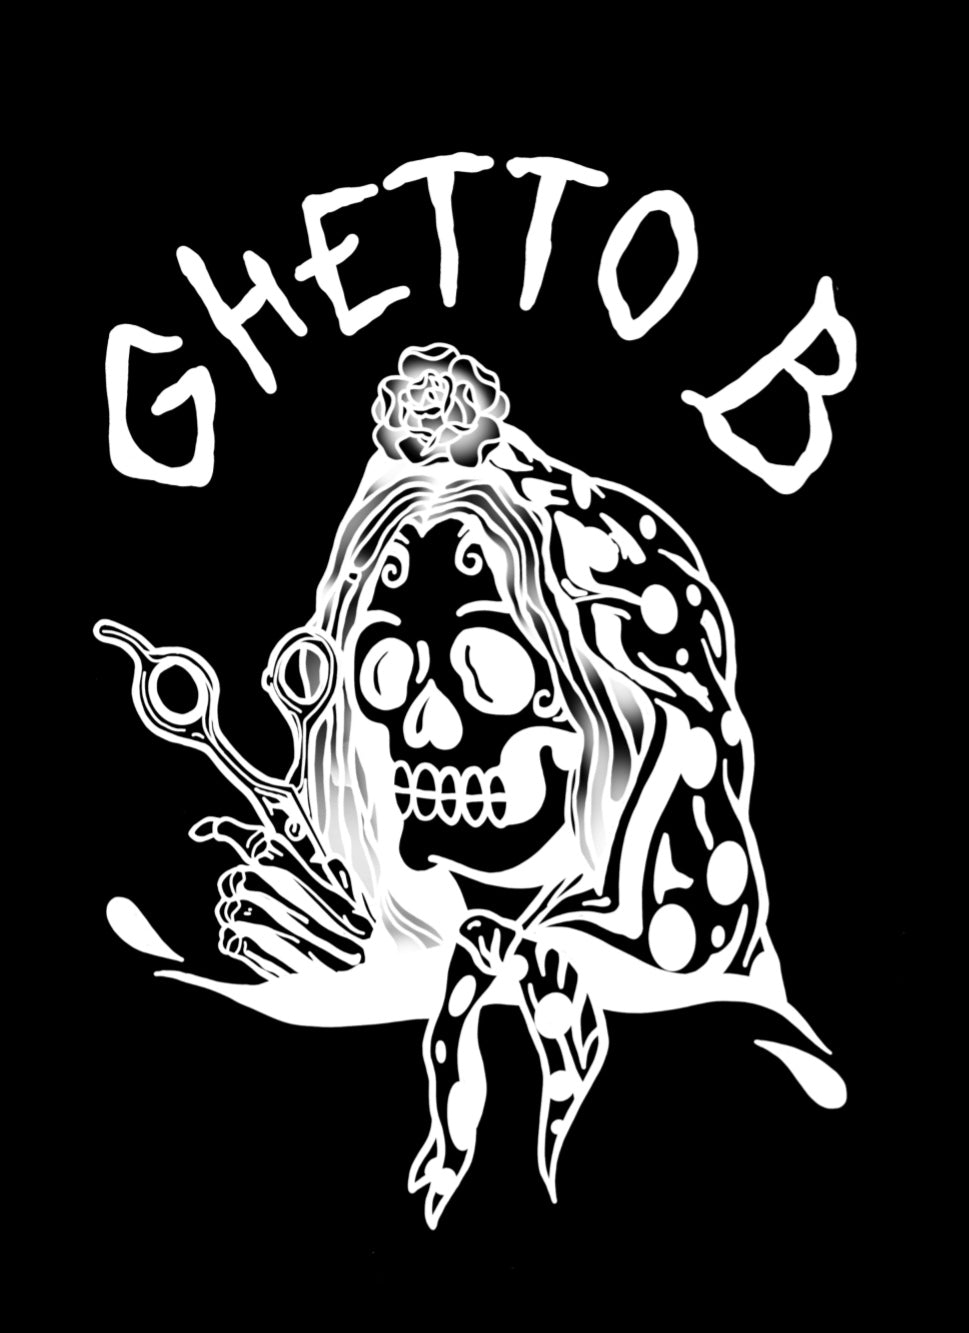 www.ghettobshop.com